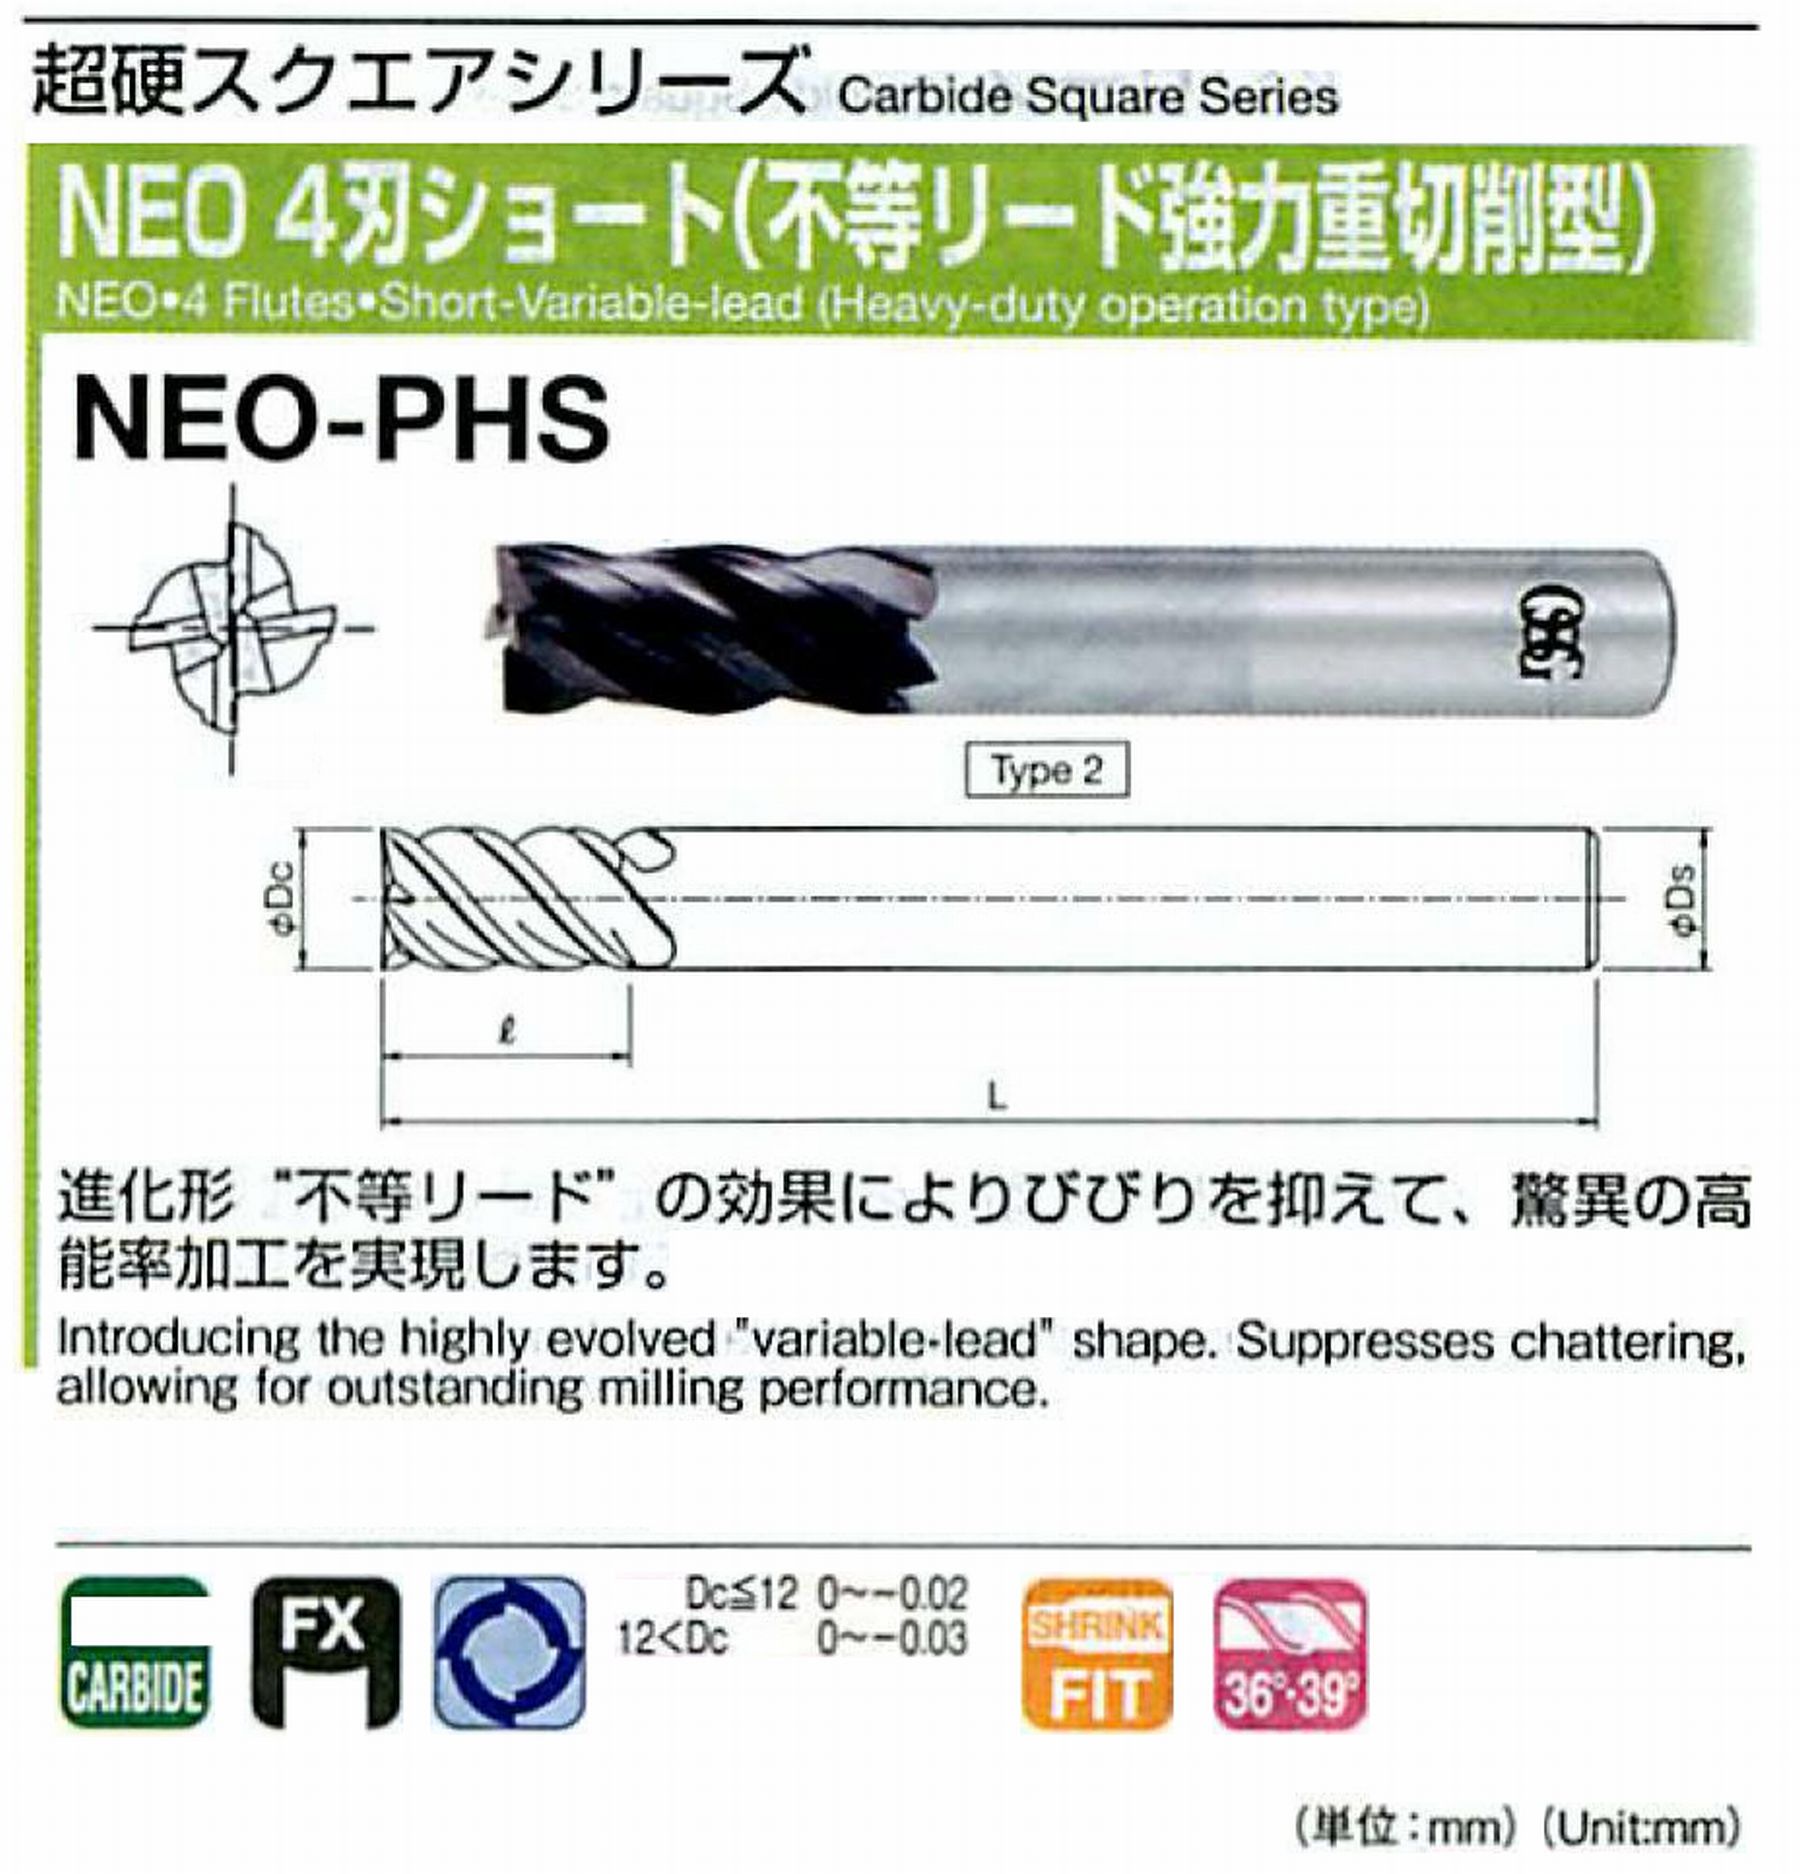 オーエスジー/OSG NEO 4刃ショート(不等リード強力重切削型) NEO-PHS 外径8 全長60 刃長16 シャンク径8mm 形状2